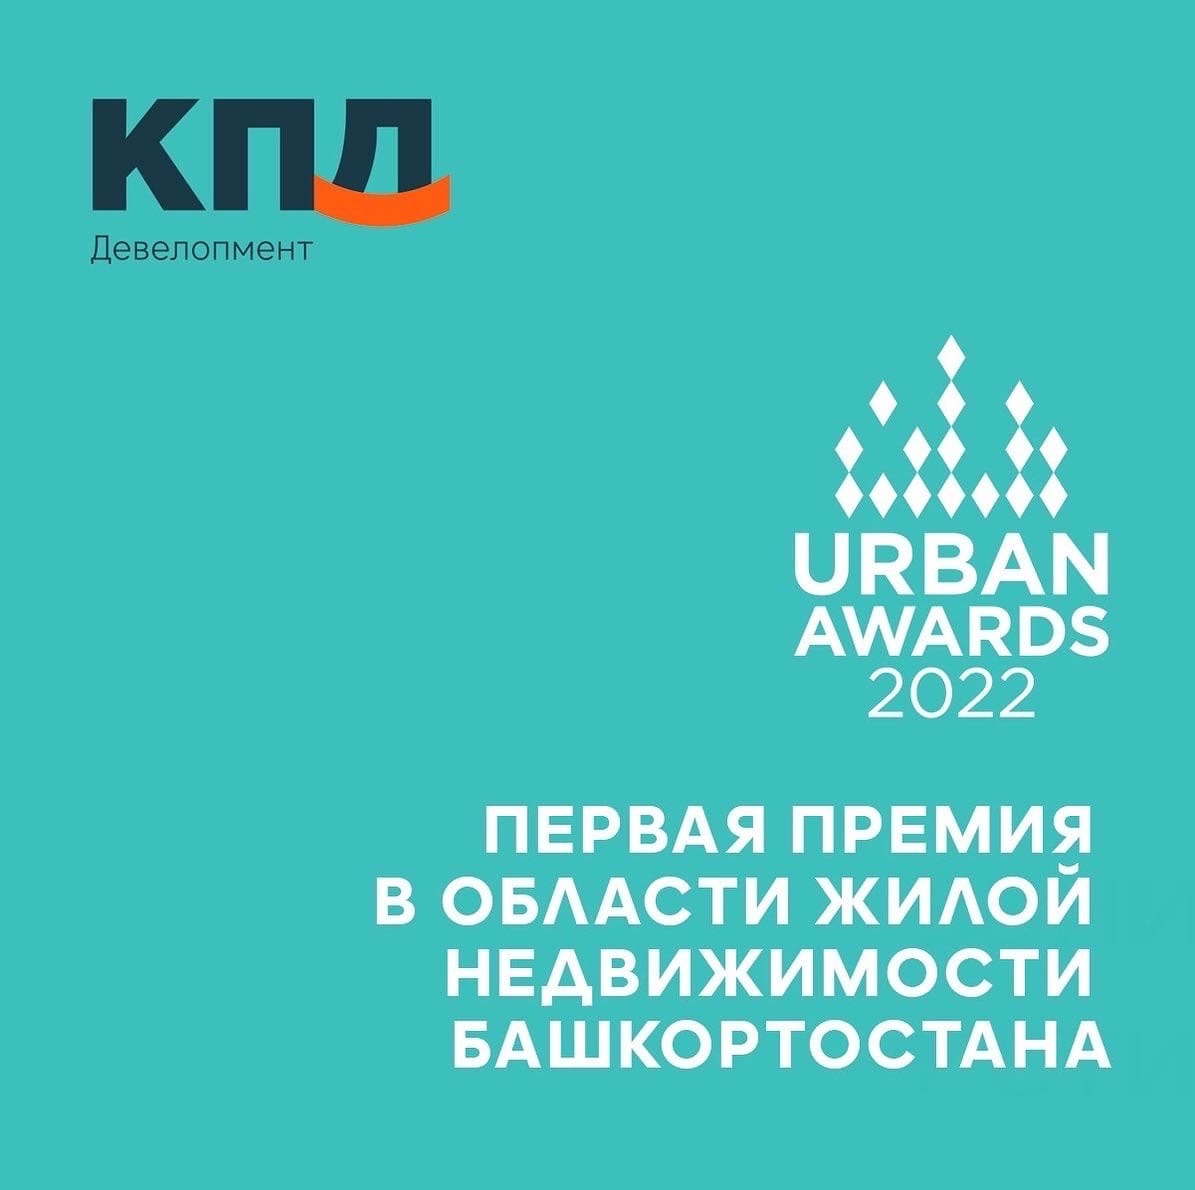 Трест КПД вышел в ФИНАЛ по 7 номинациям Urban Awards с проектами ЖК Новая Дема, ЖК Прибрежный и ЖК Йорт.